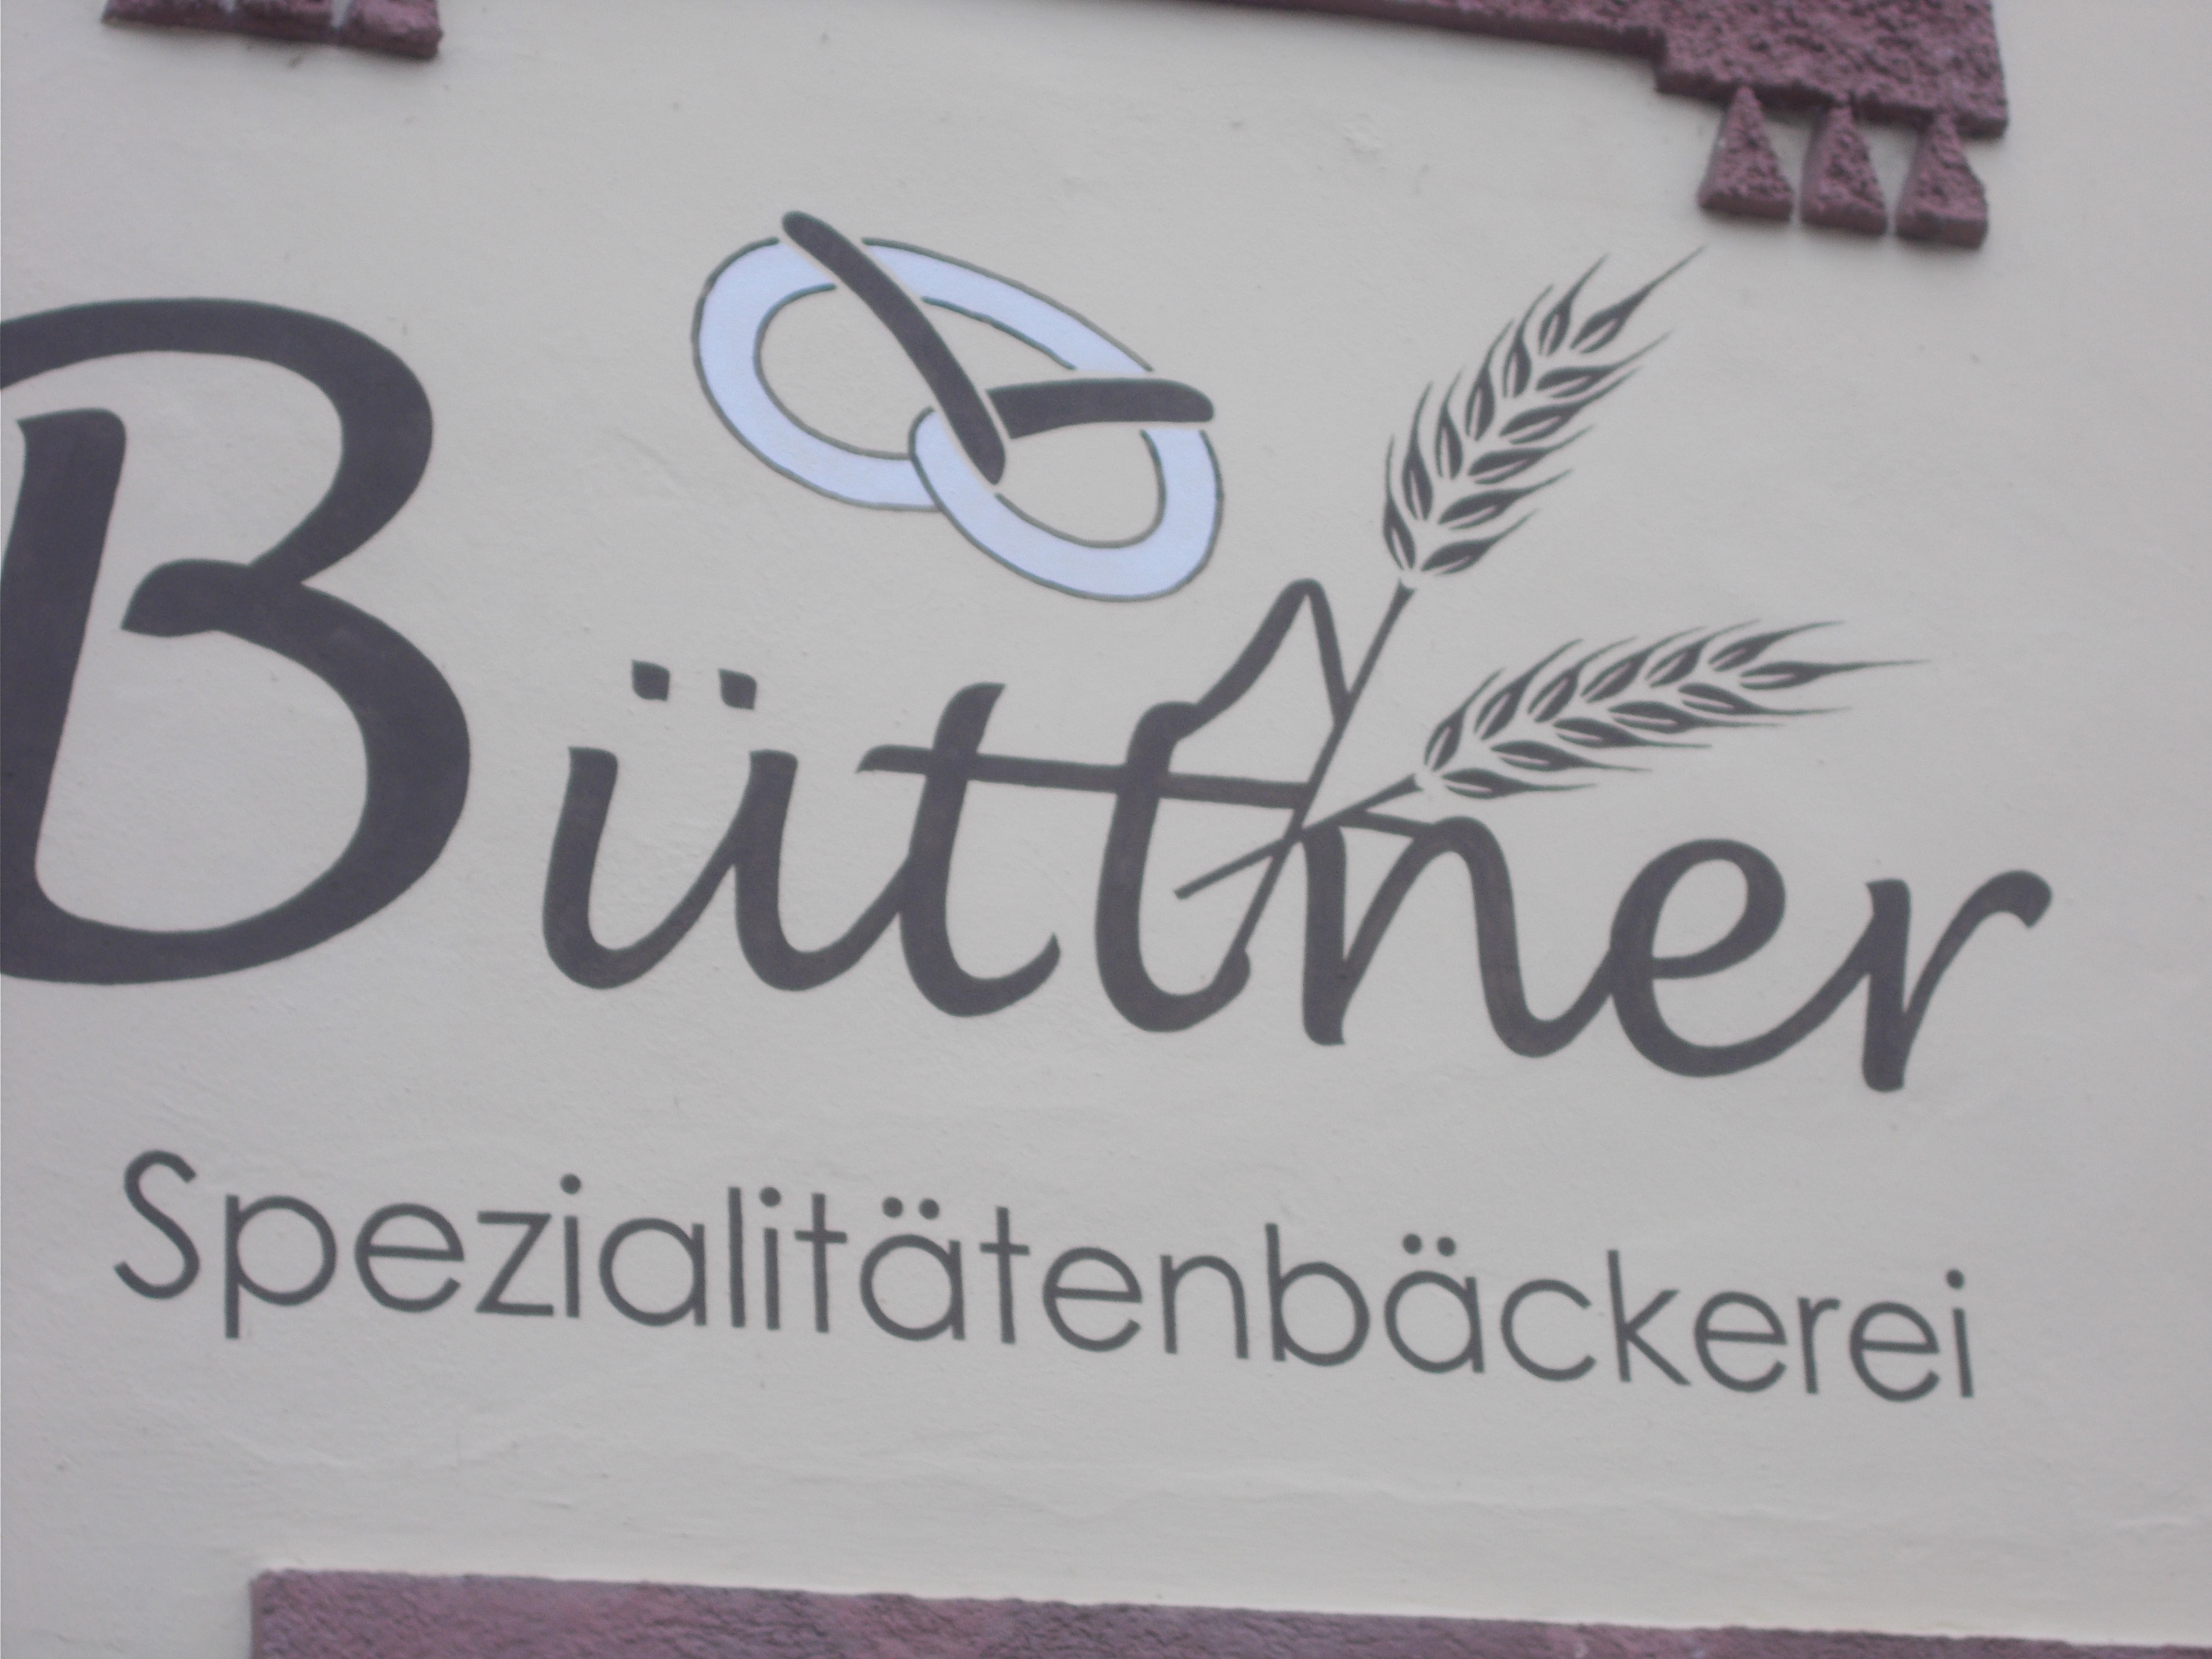 Bild 1 Büttner Leo Spezialitäten Bäckerei Filiale in Bad Tölz